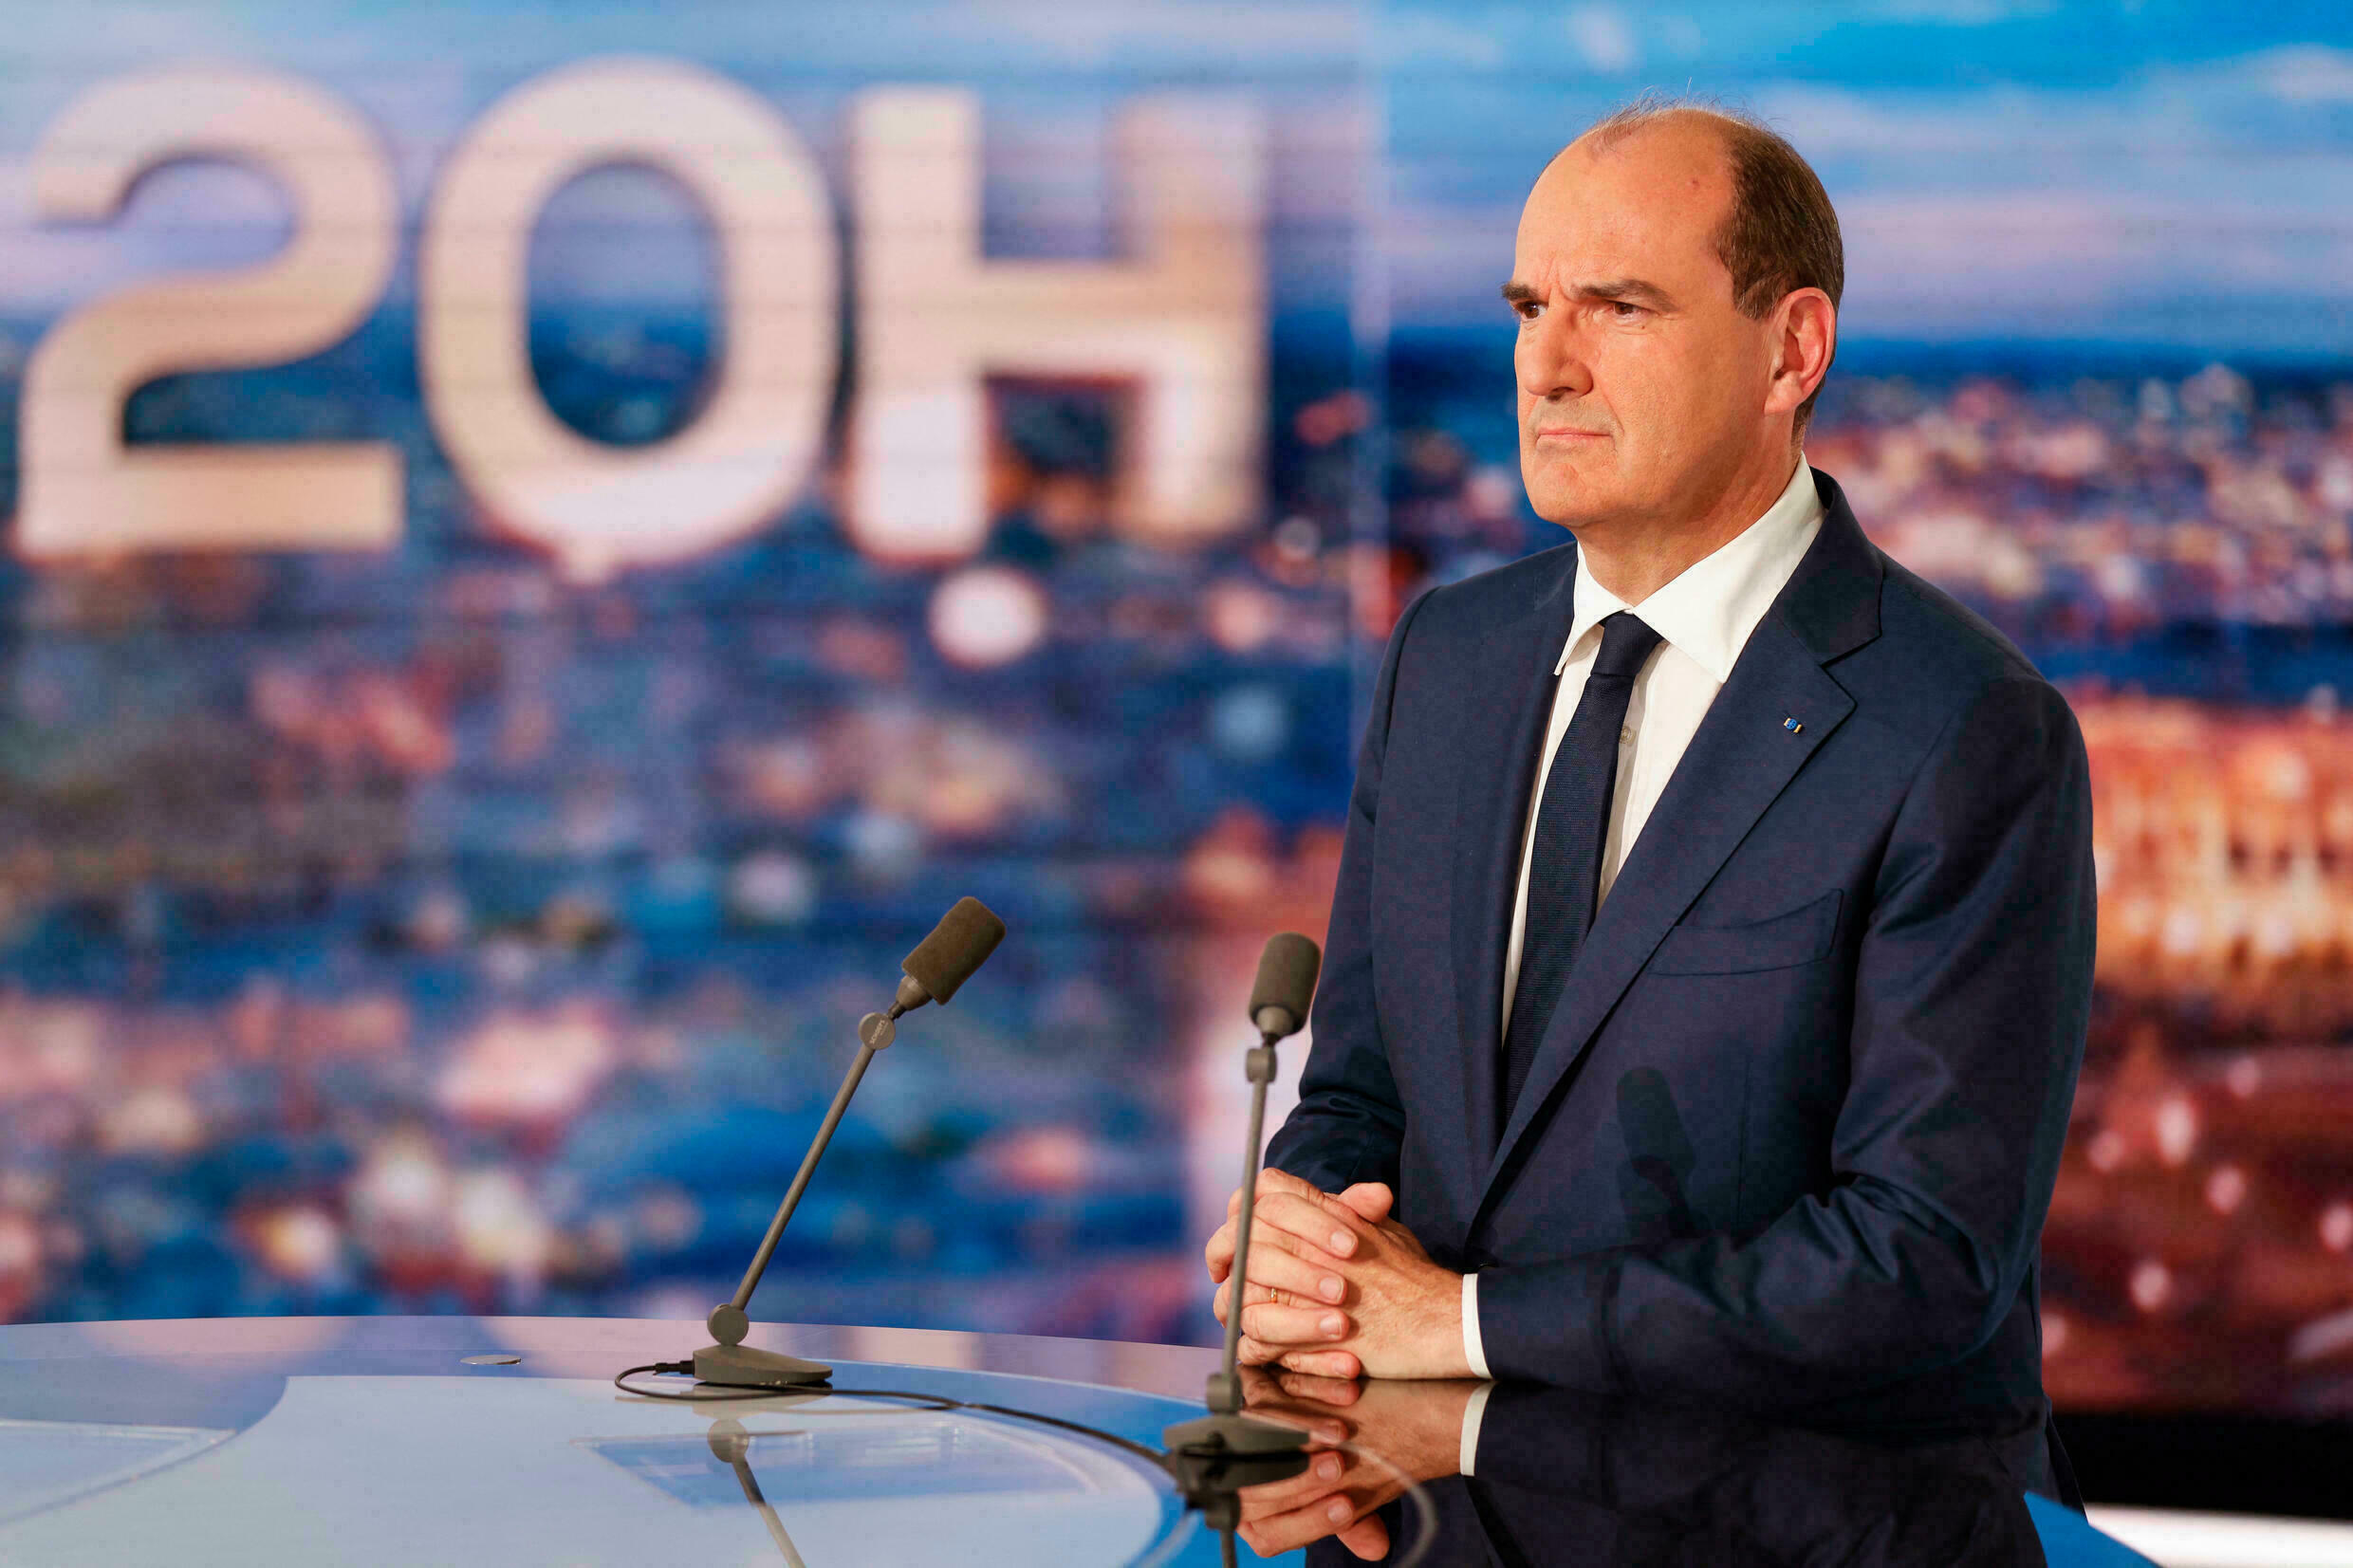 Jean Castex hovorí o príspevku naživo vo francúskej TV (Francúzsko príspevok pre nízkopríjmové domácnosti na pohonné hmoty)